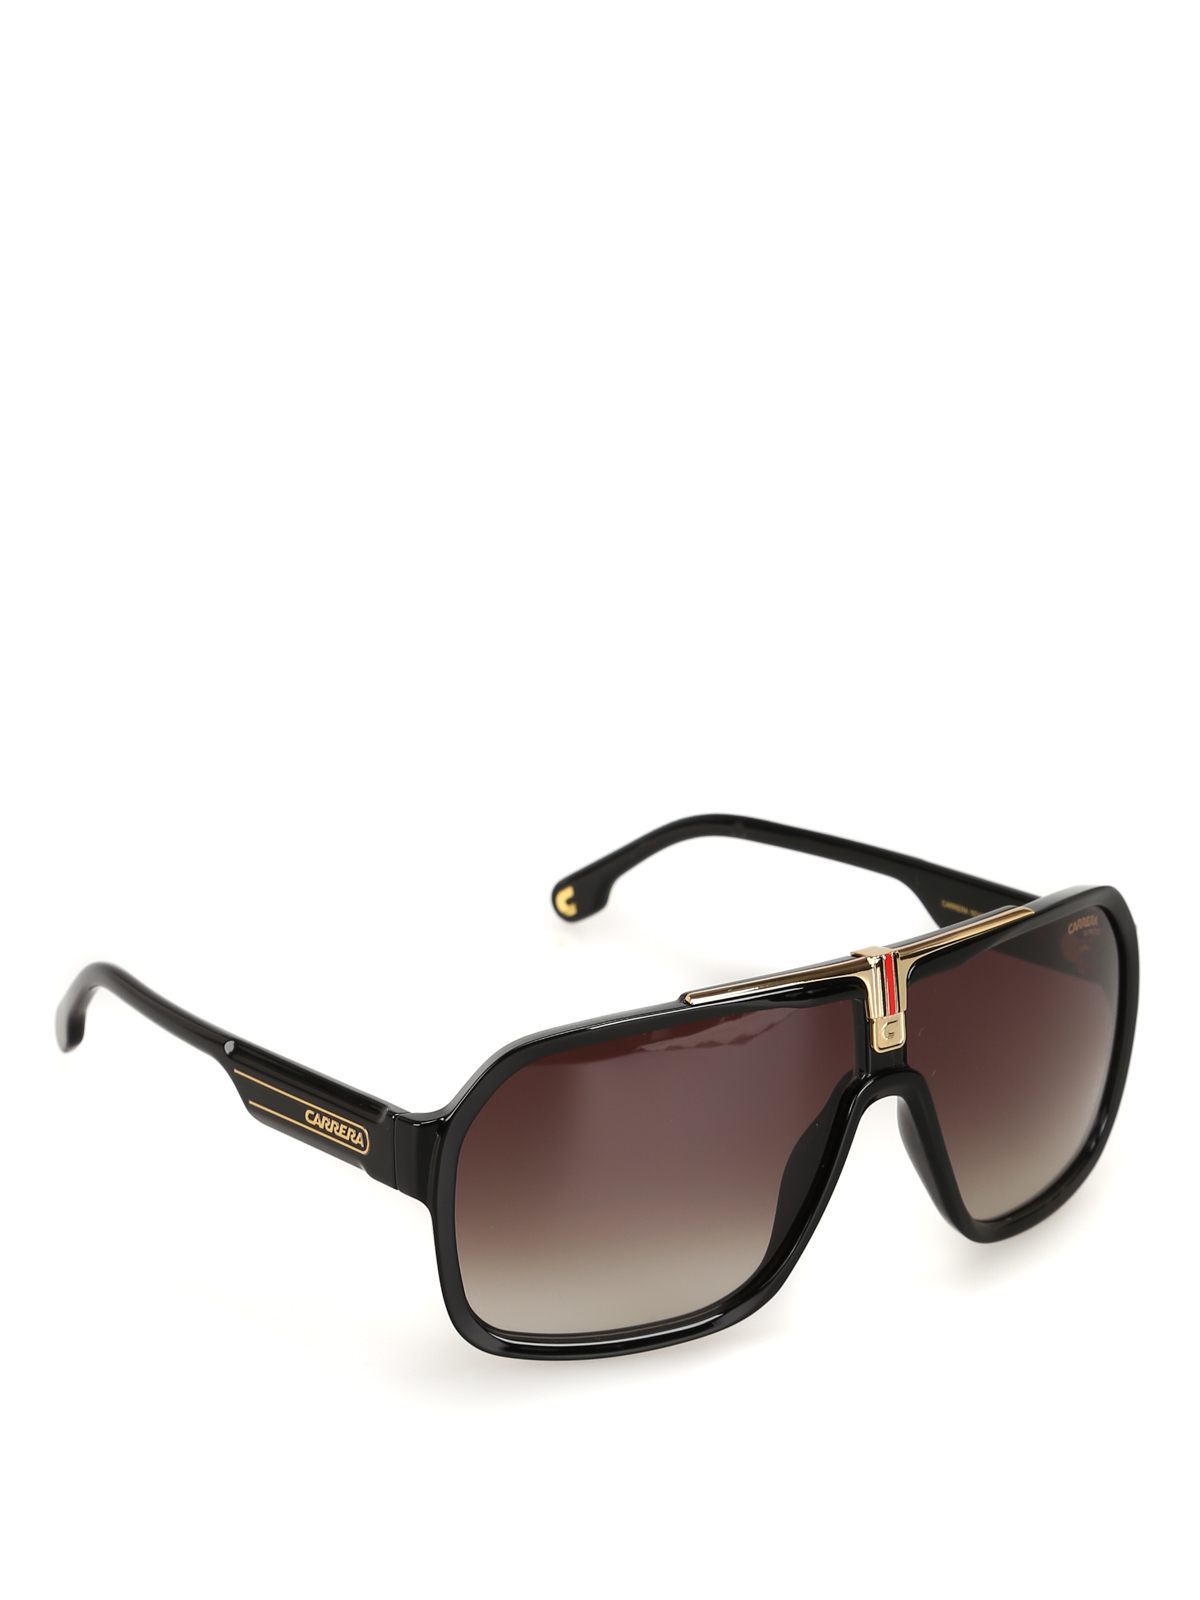 Sunglasses Carrera - Carrera flag aviator sunglasses - 1014S807HABLACK